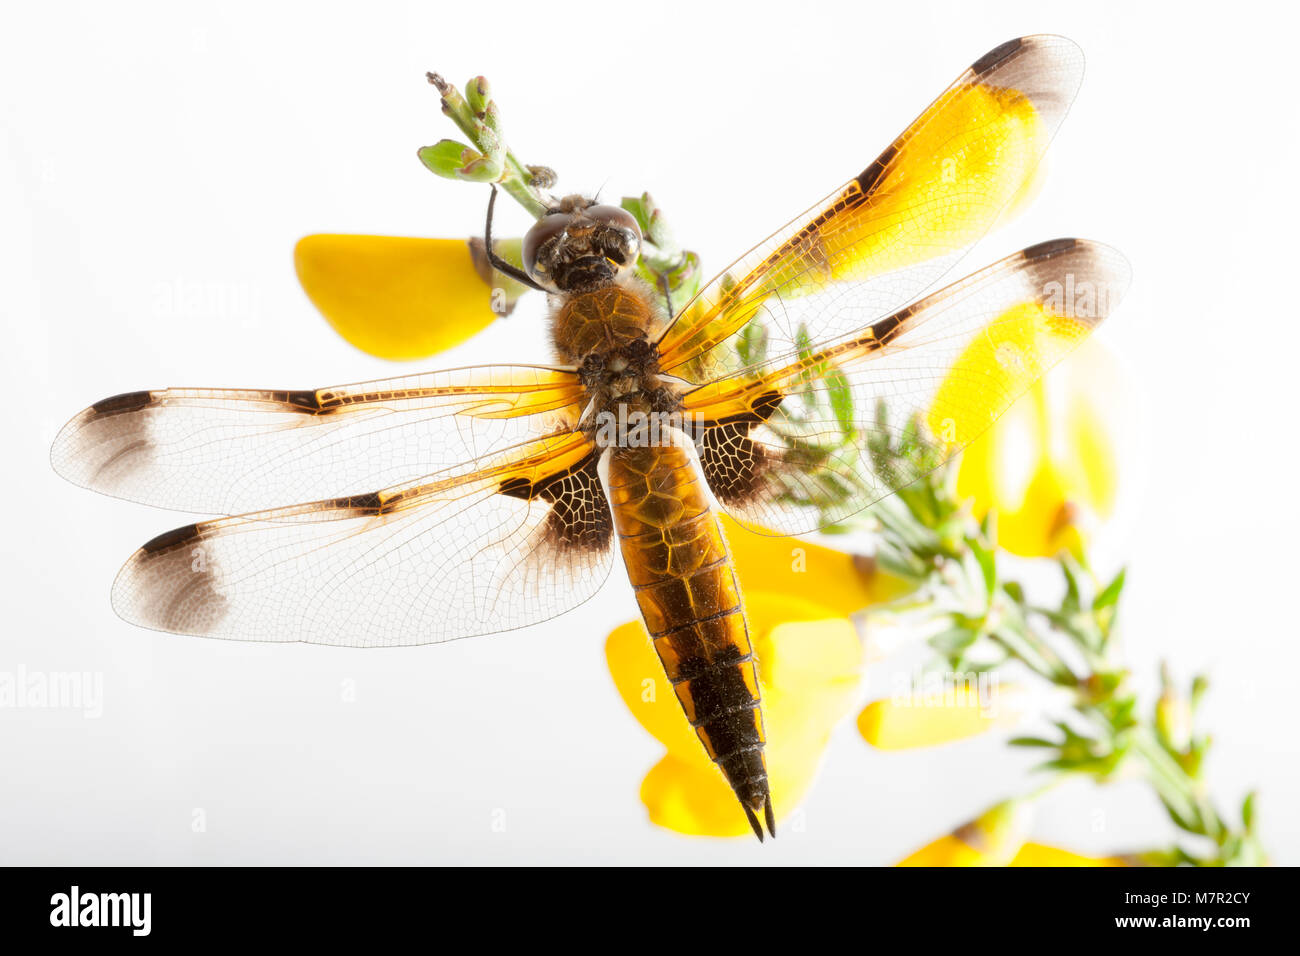 Un quattro chiaser dragonfly maculata, Libellula quadrimaculata, fotografato su sfondo bianco. Dorset Inghilterra GB Foto Stock